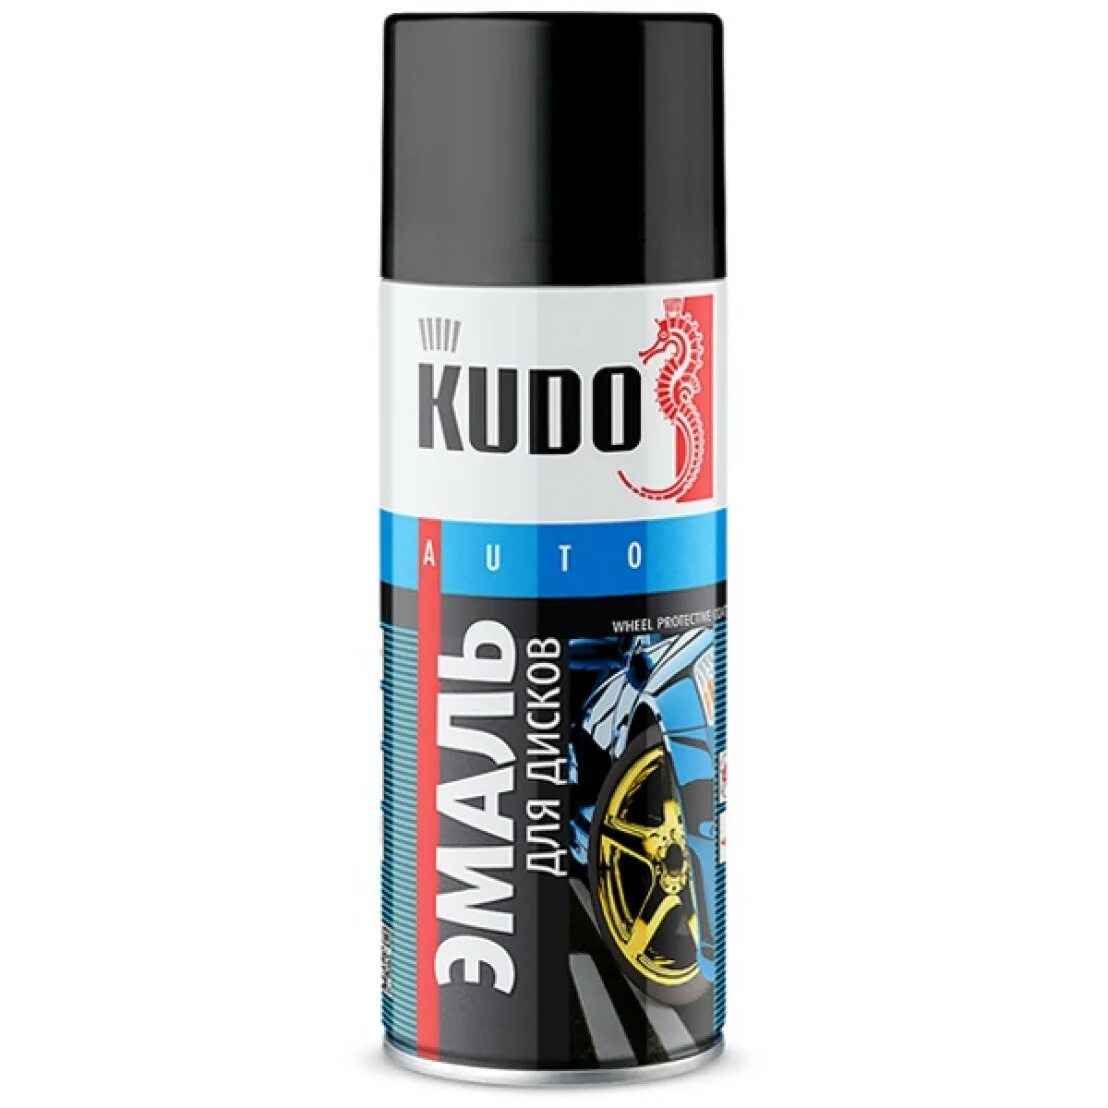 Kudo эмаль черная матовая. Ku1002 Kudo эмаль универсальная черная глянцевая (520 мл.) Kudo ku-1002. Краска-эмаль спрей Kudo для дисков (алюминий) 520мл. Ku5201. Эмаль универсальная (черная глянцевая) Kudo 520мл. Краска для дисков черная 520мл Kudo ku5203.